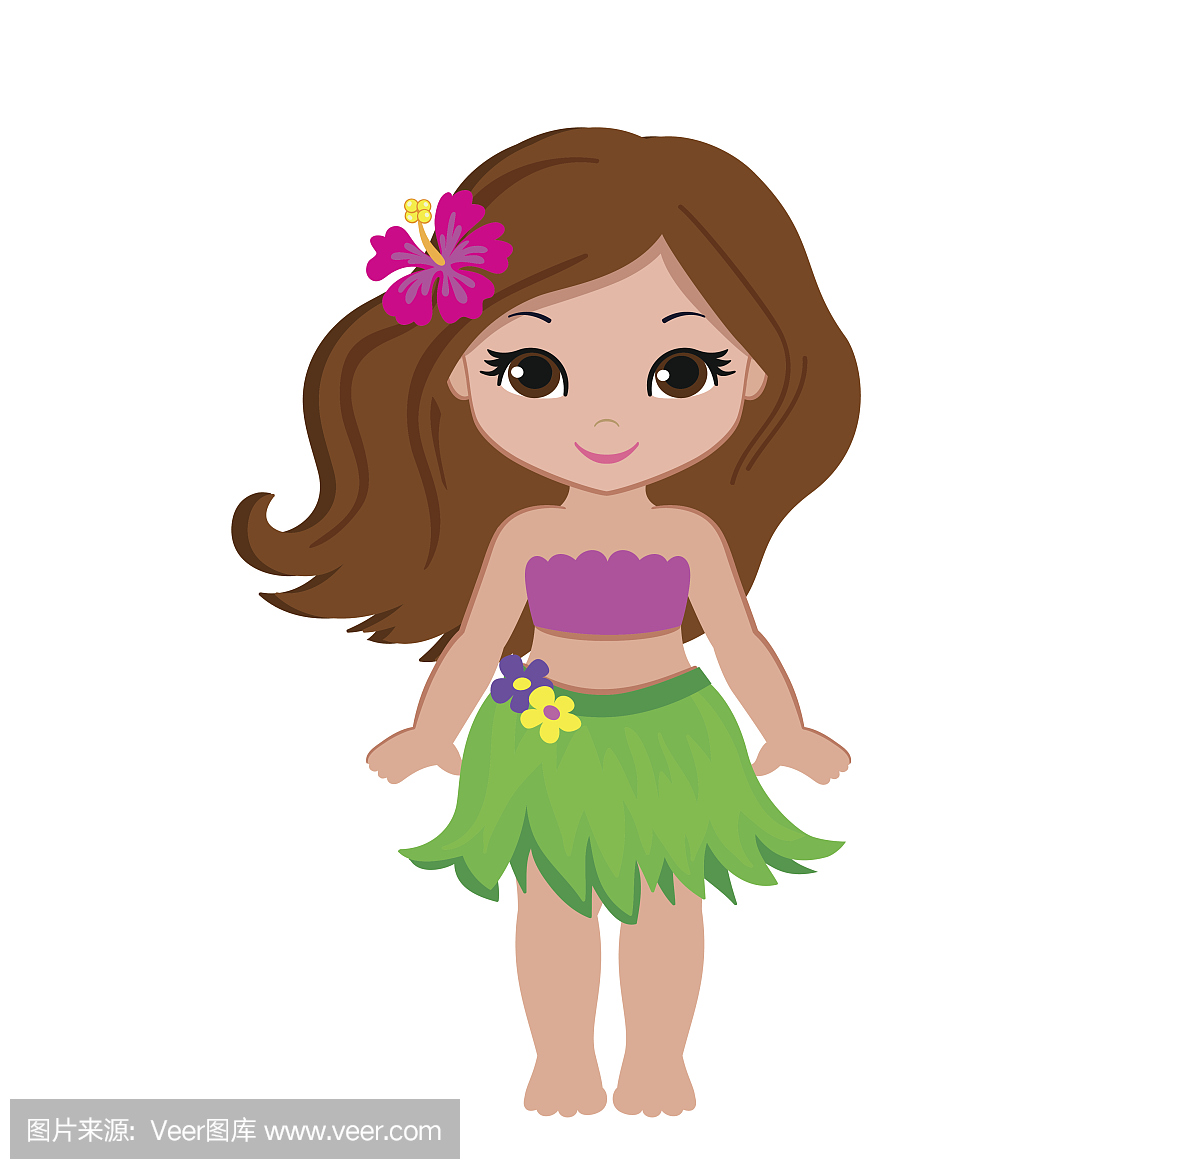 可爱的卡通女孩在传统夏威夷舞蹈服装。